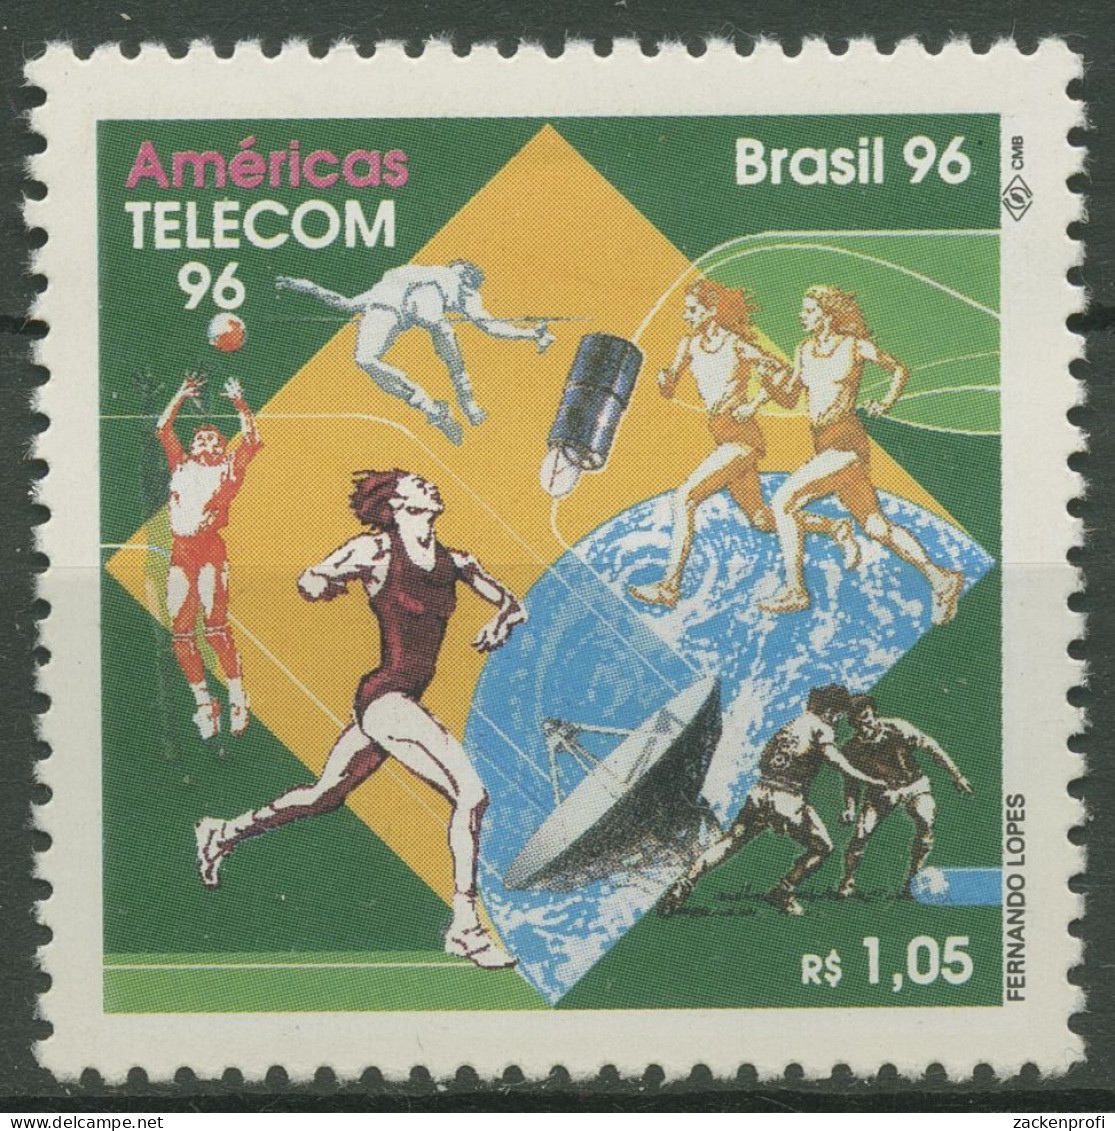 Brasilien 1996 Fernmeldetechnik AMERICAS TELEKOM Satellit 2708 Postfrisch - Ungebraucht